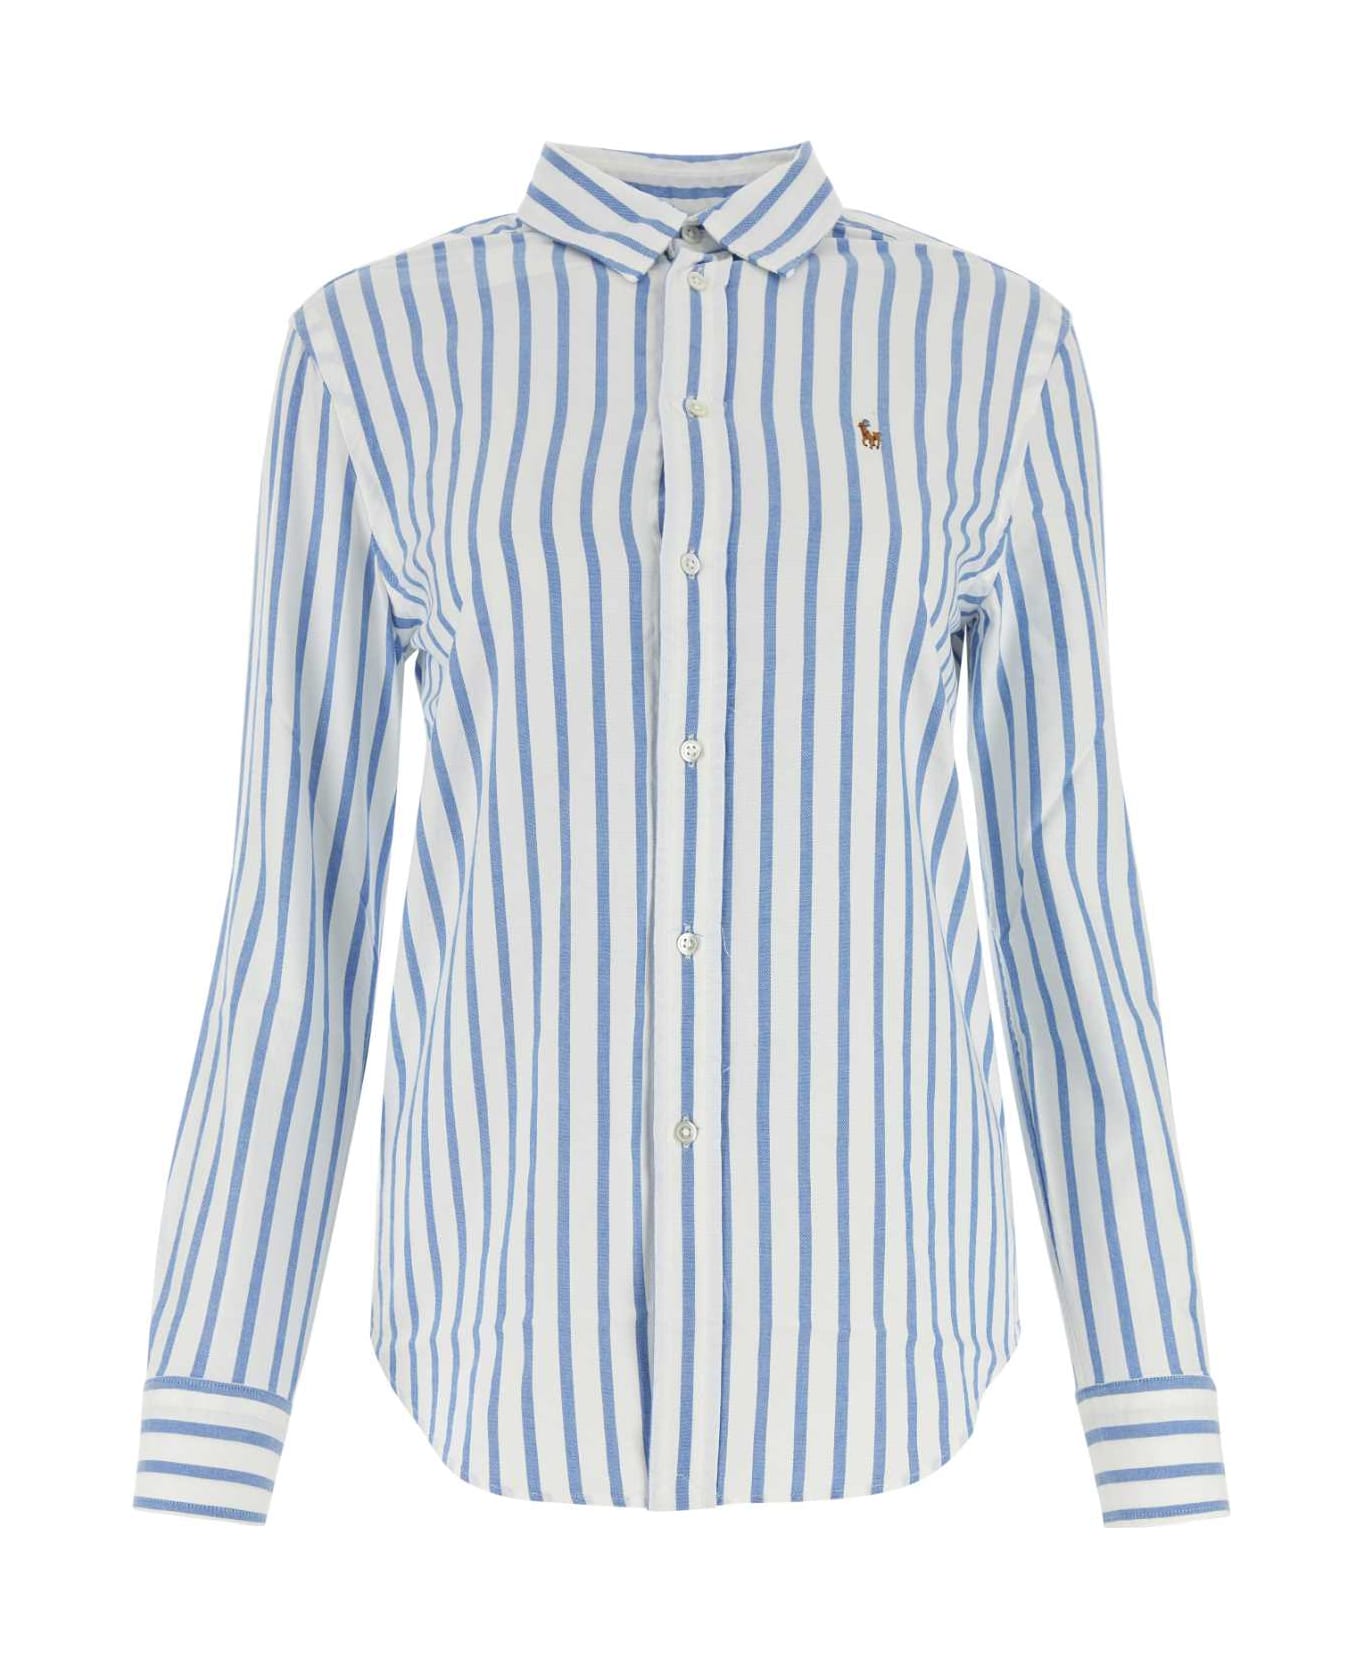 Polo Ralph Lauren Embroidered Oxford Shirt - 1693BWHITELAKEBLUESTRIPE シャツ